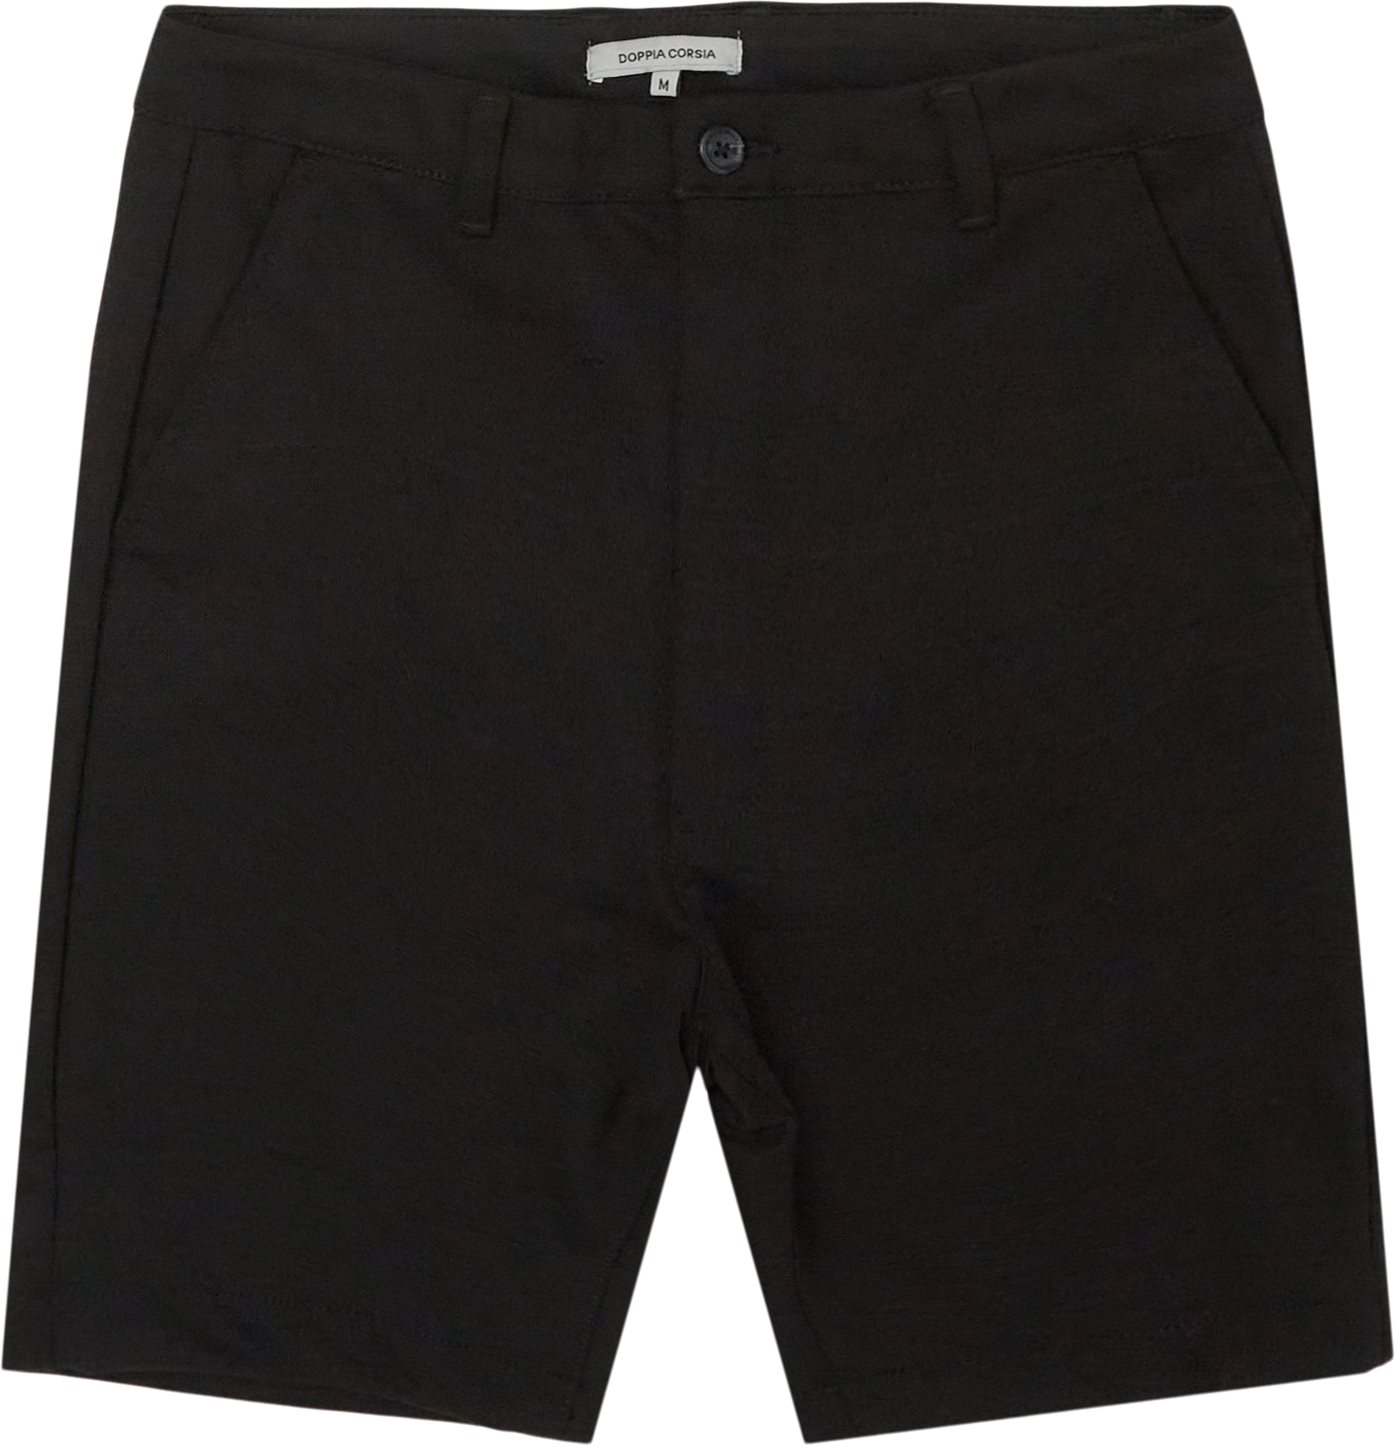 Colette Shorts - Shorts - Regular fit - Sort